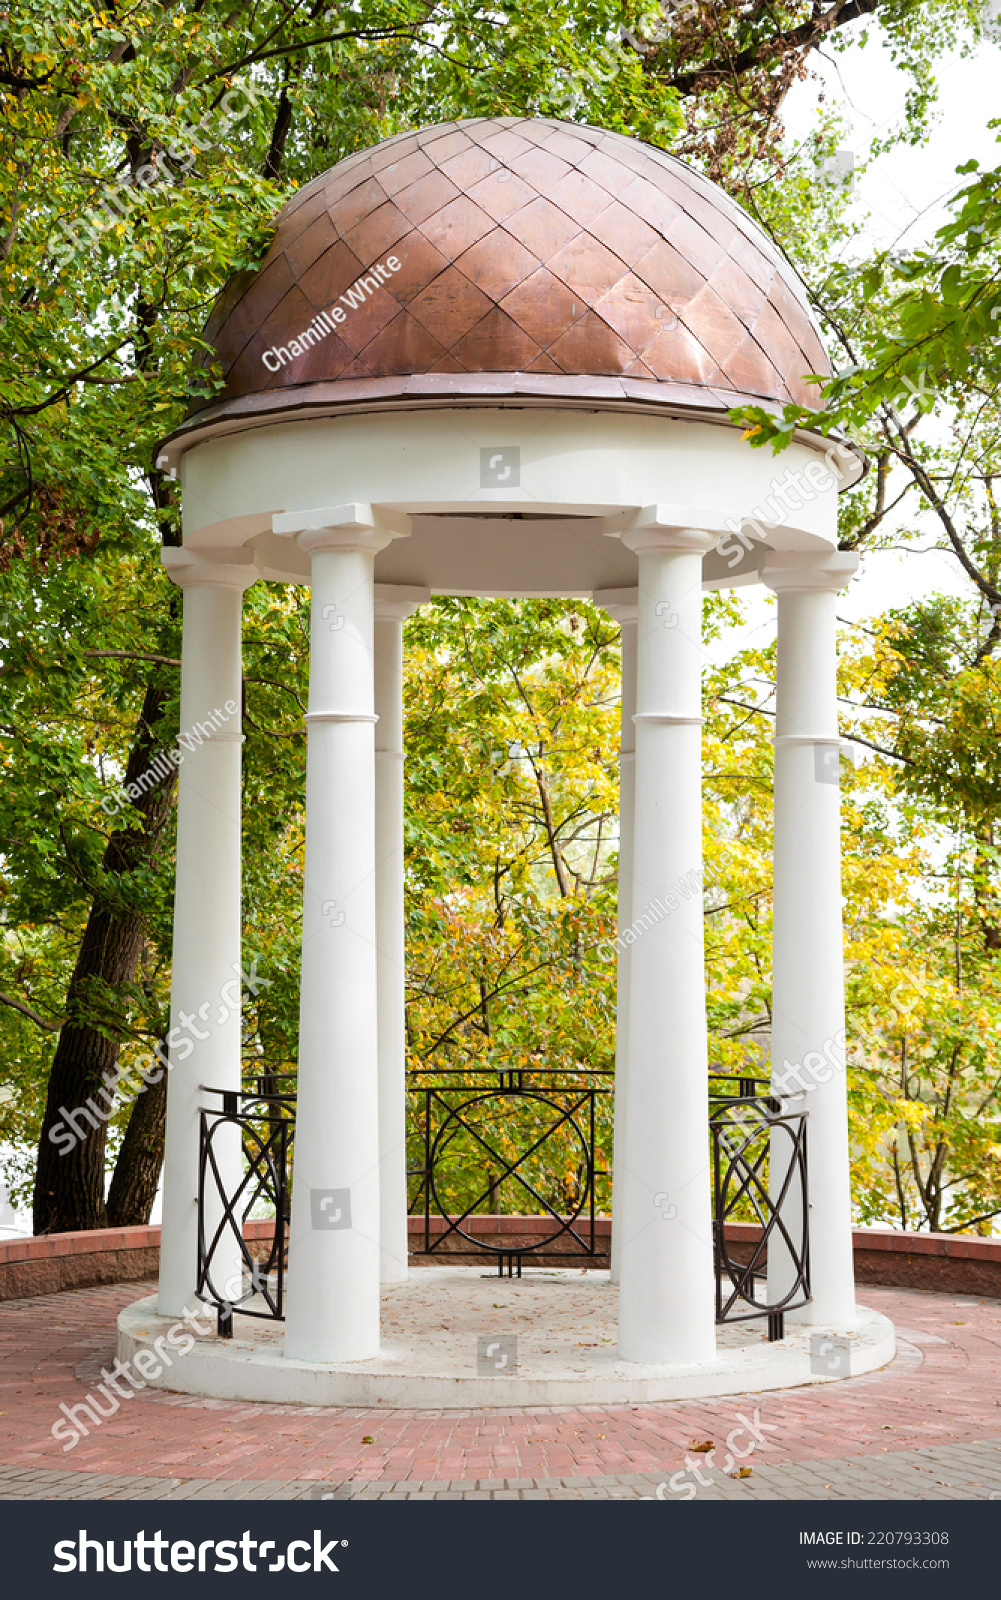  Gazebo  Columns  Autumn Garden Classic Style Stock Photo 